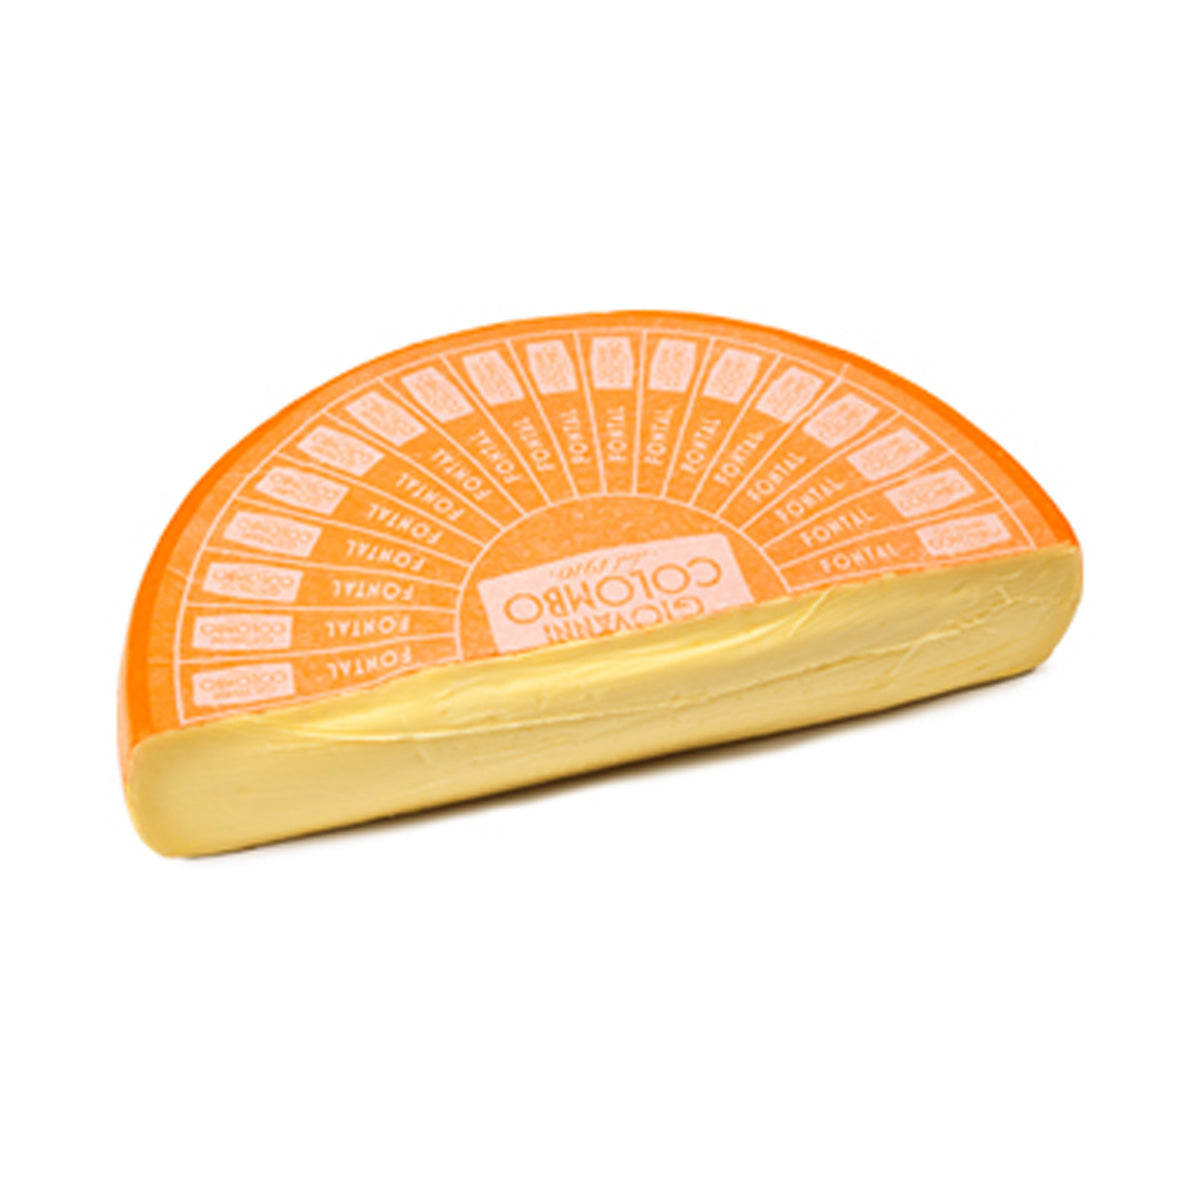 Ambriola Fontina Fontal Cheese 12 lb